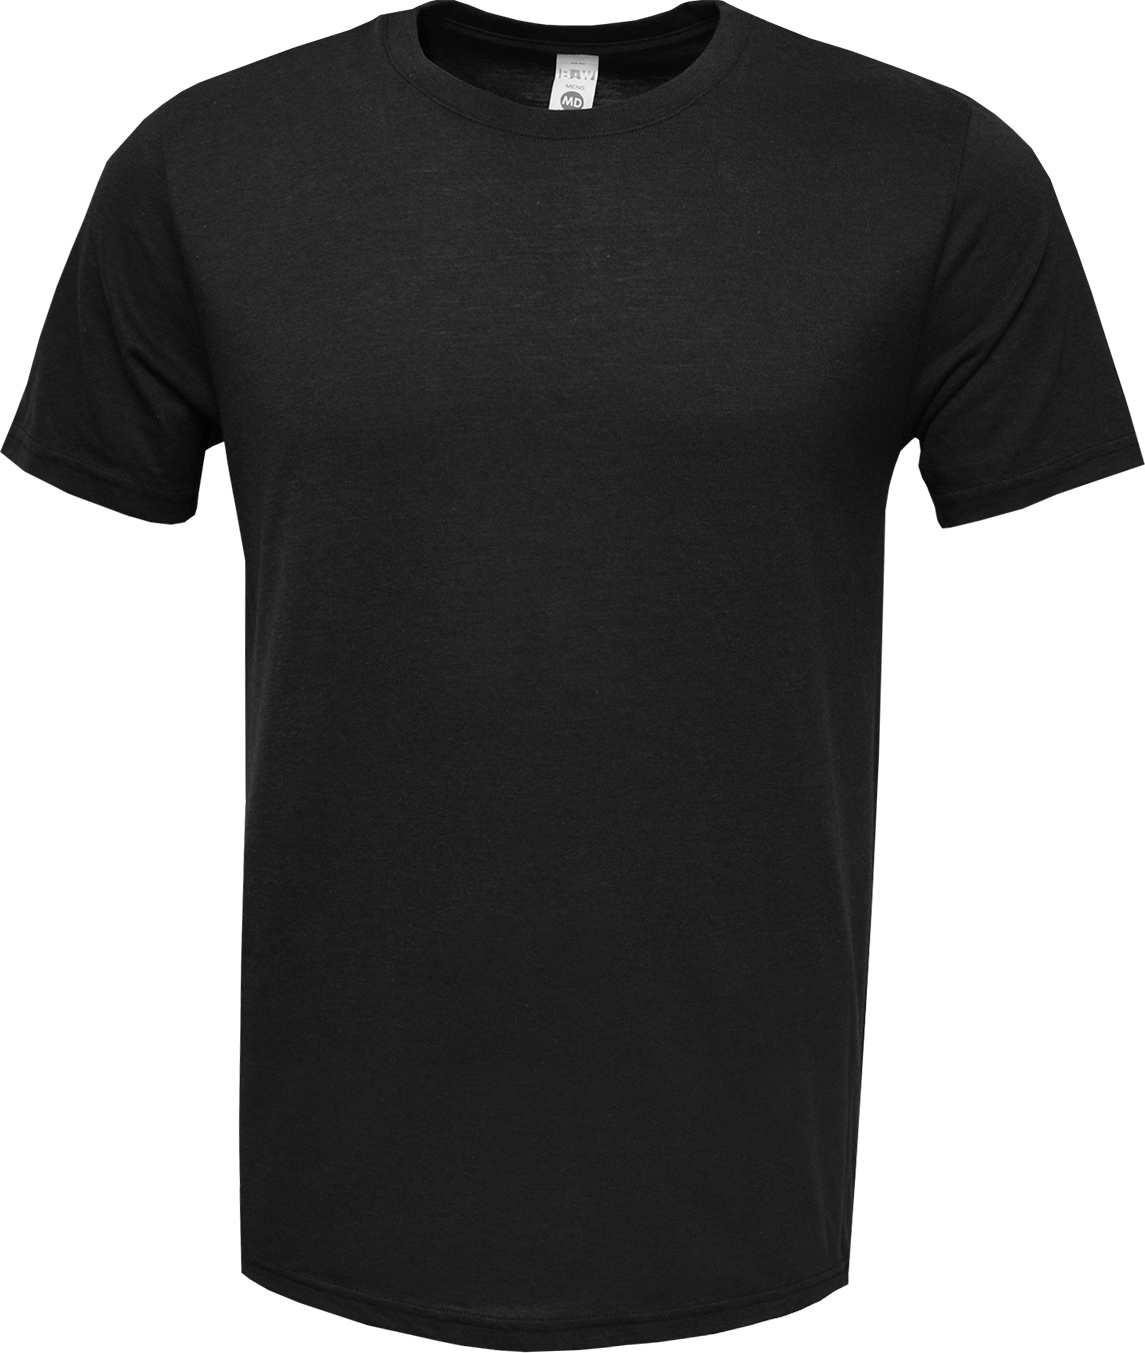 BAW Athletic Wear TR72 - Unisex Tri Blend T-Shirt Short Sleeve $7.05 ...